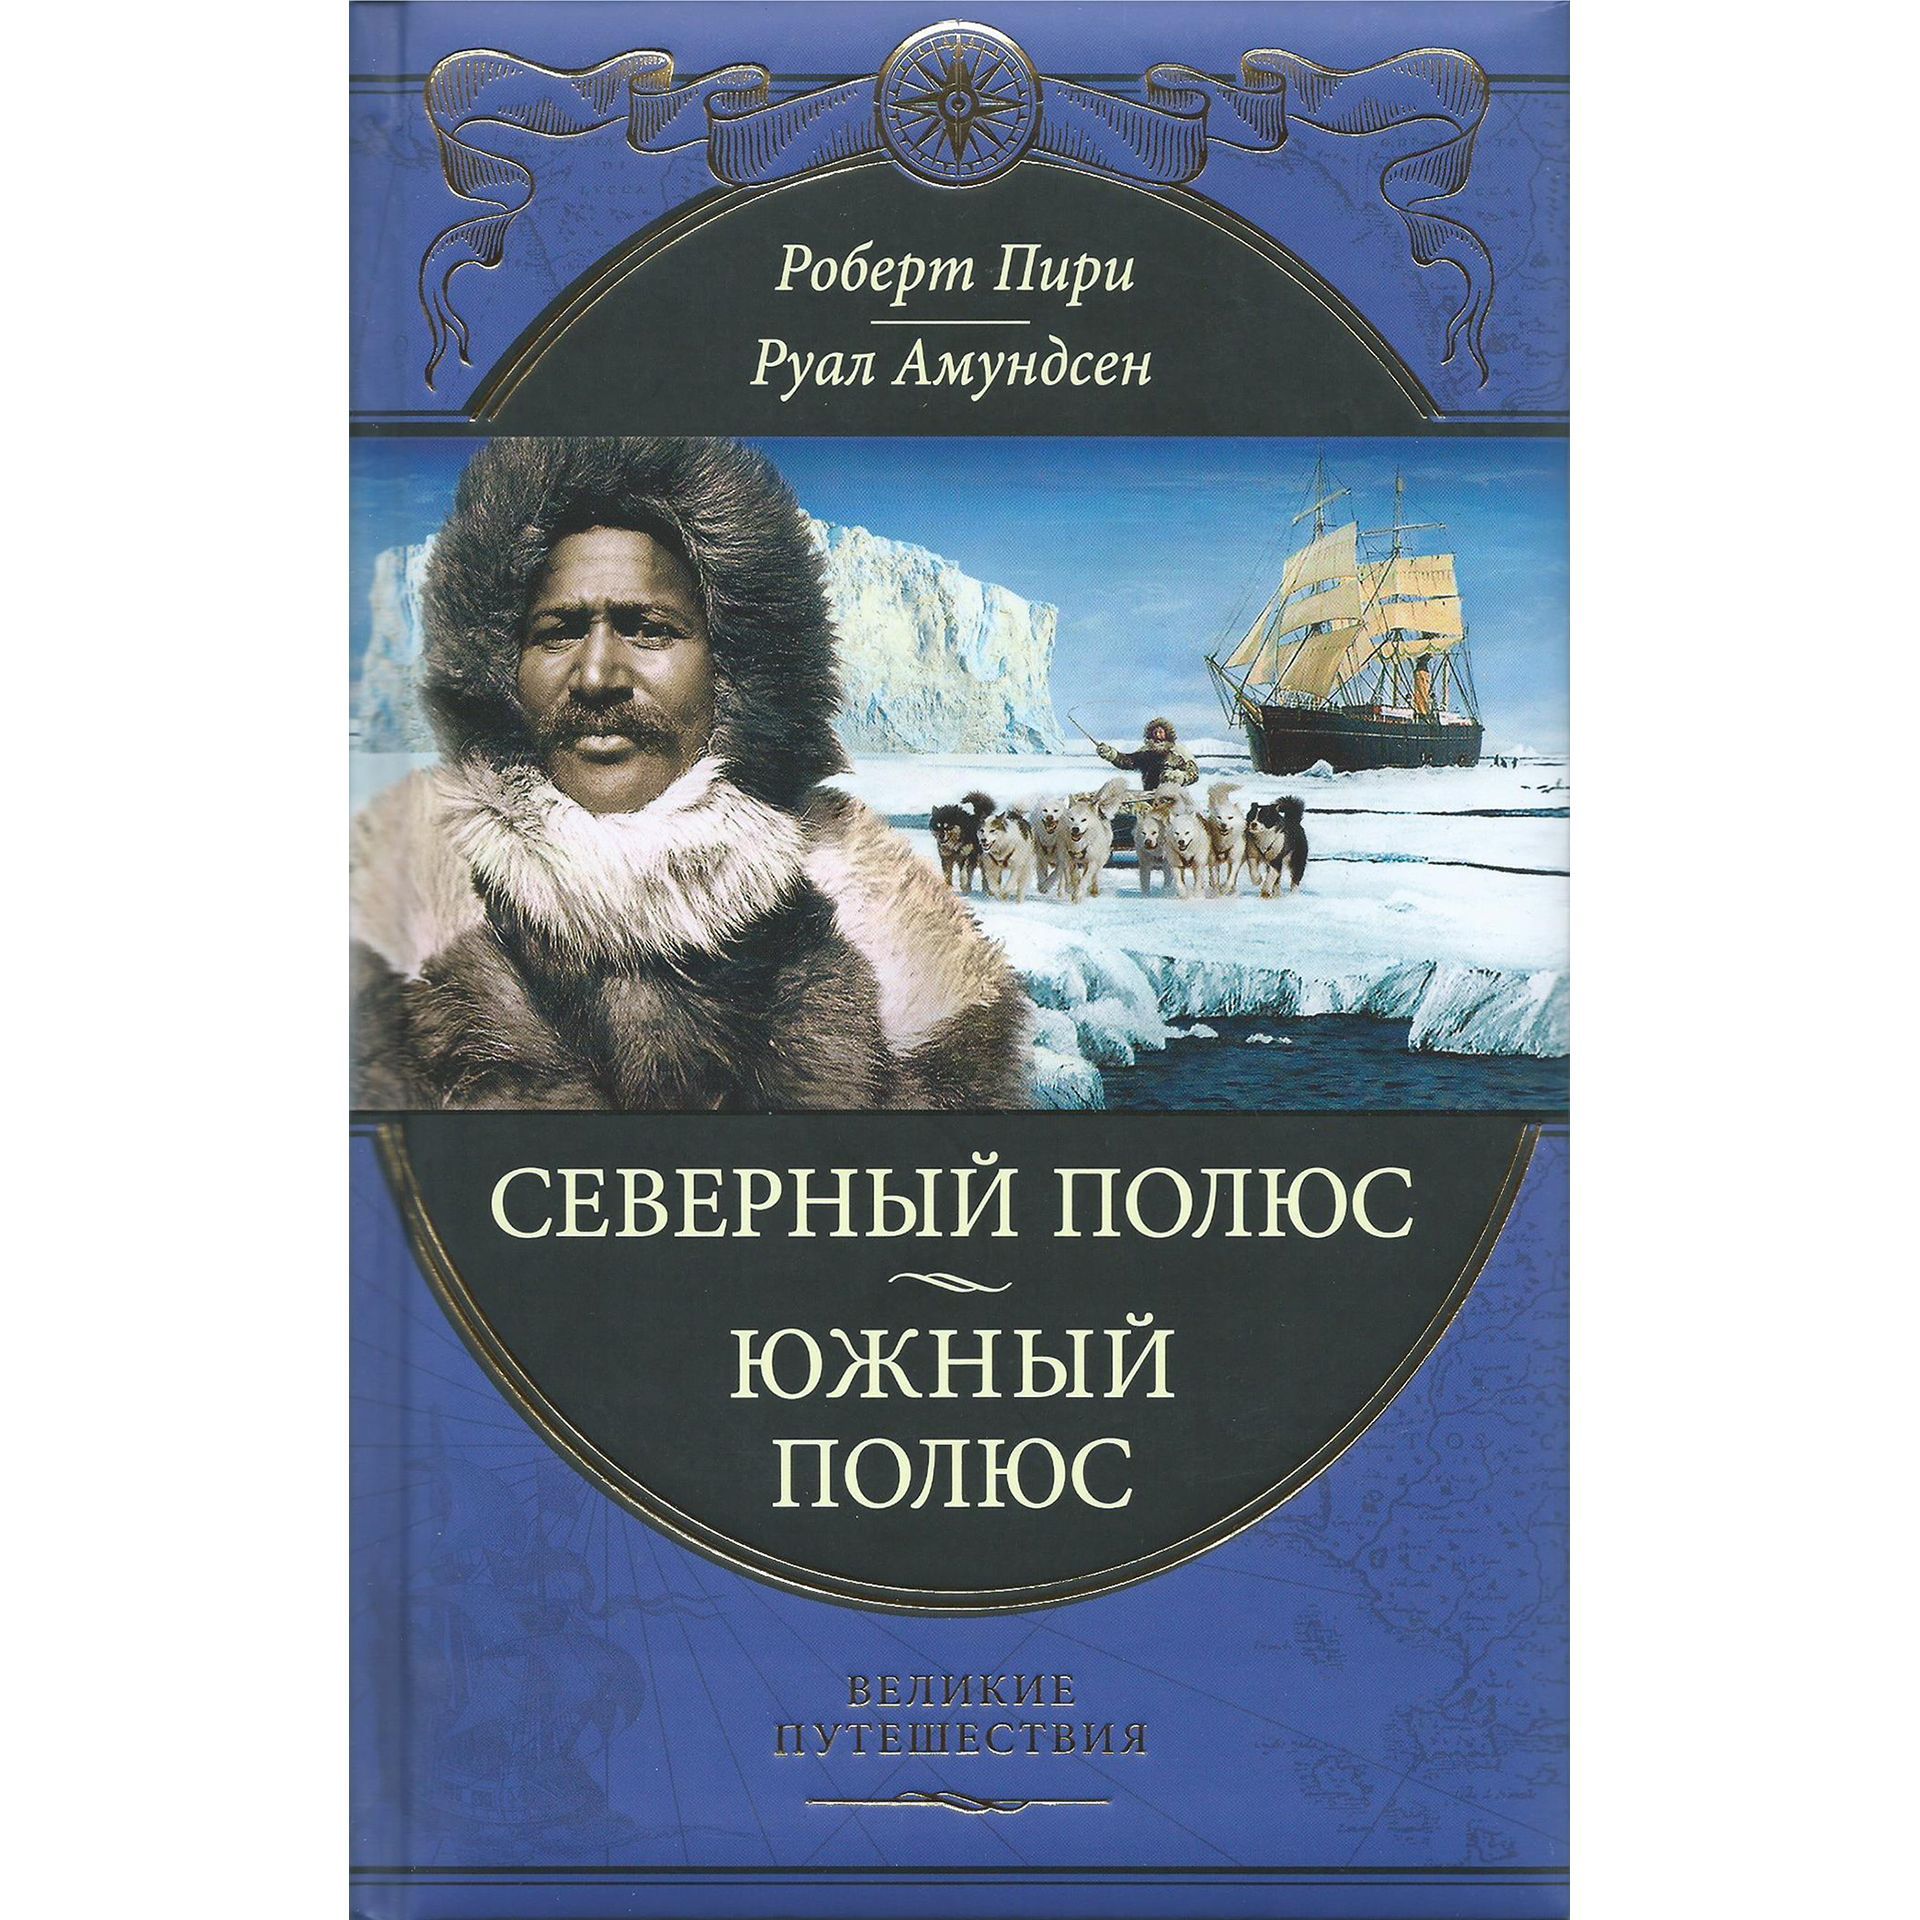 Включи великие путешествия. Амундсен Южный полюс книга. Руал Амундсен. Руаль Амундсен книга. Пири Северный полюс Амундсен Южный полюс.